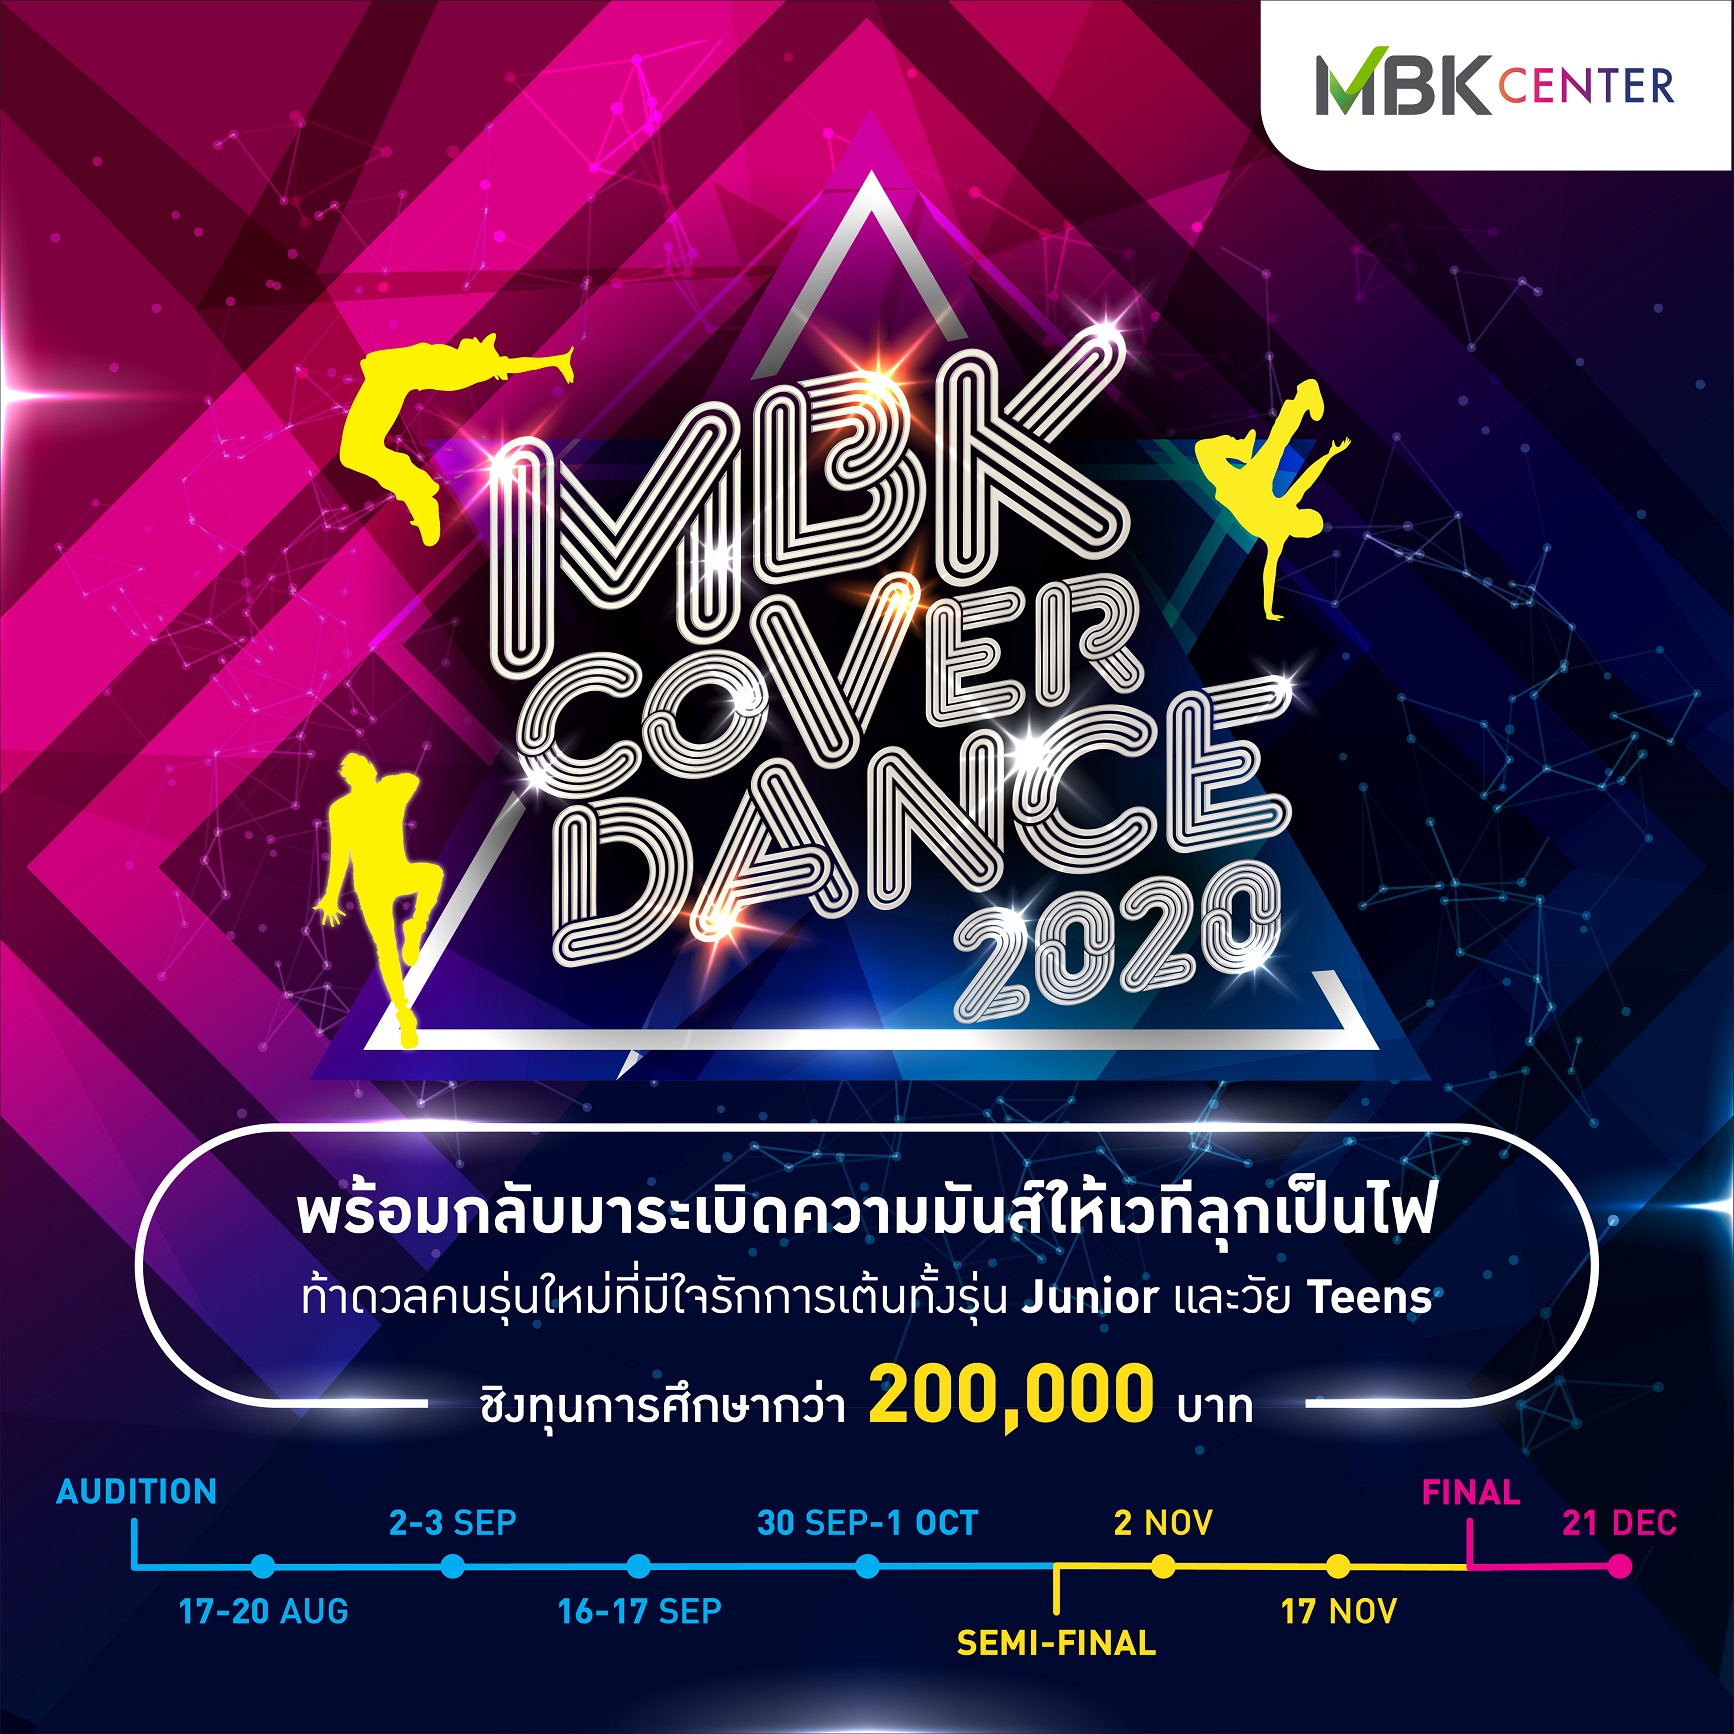 สุดปัง! เปิดฉากงานเต้นโคฟเวอร์แห่งปี MBK COVER DANCE 2020 กองเชียร์คึกคัก เยาวชนตบเท้าร่วมแข่งขันชิงทุนการศึกษามากกว่า 200,000 บาท